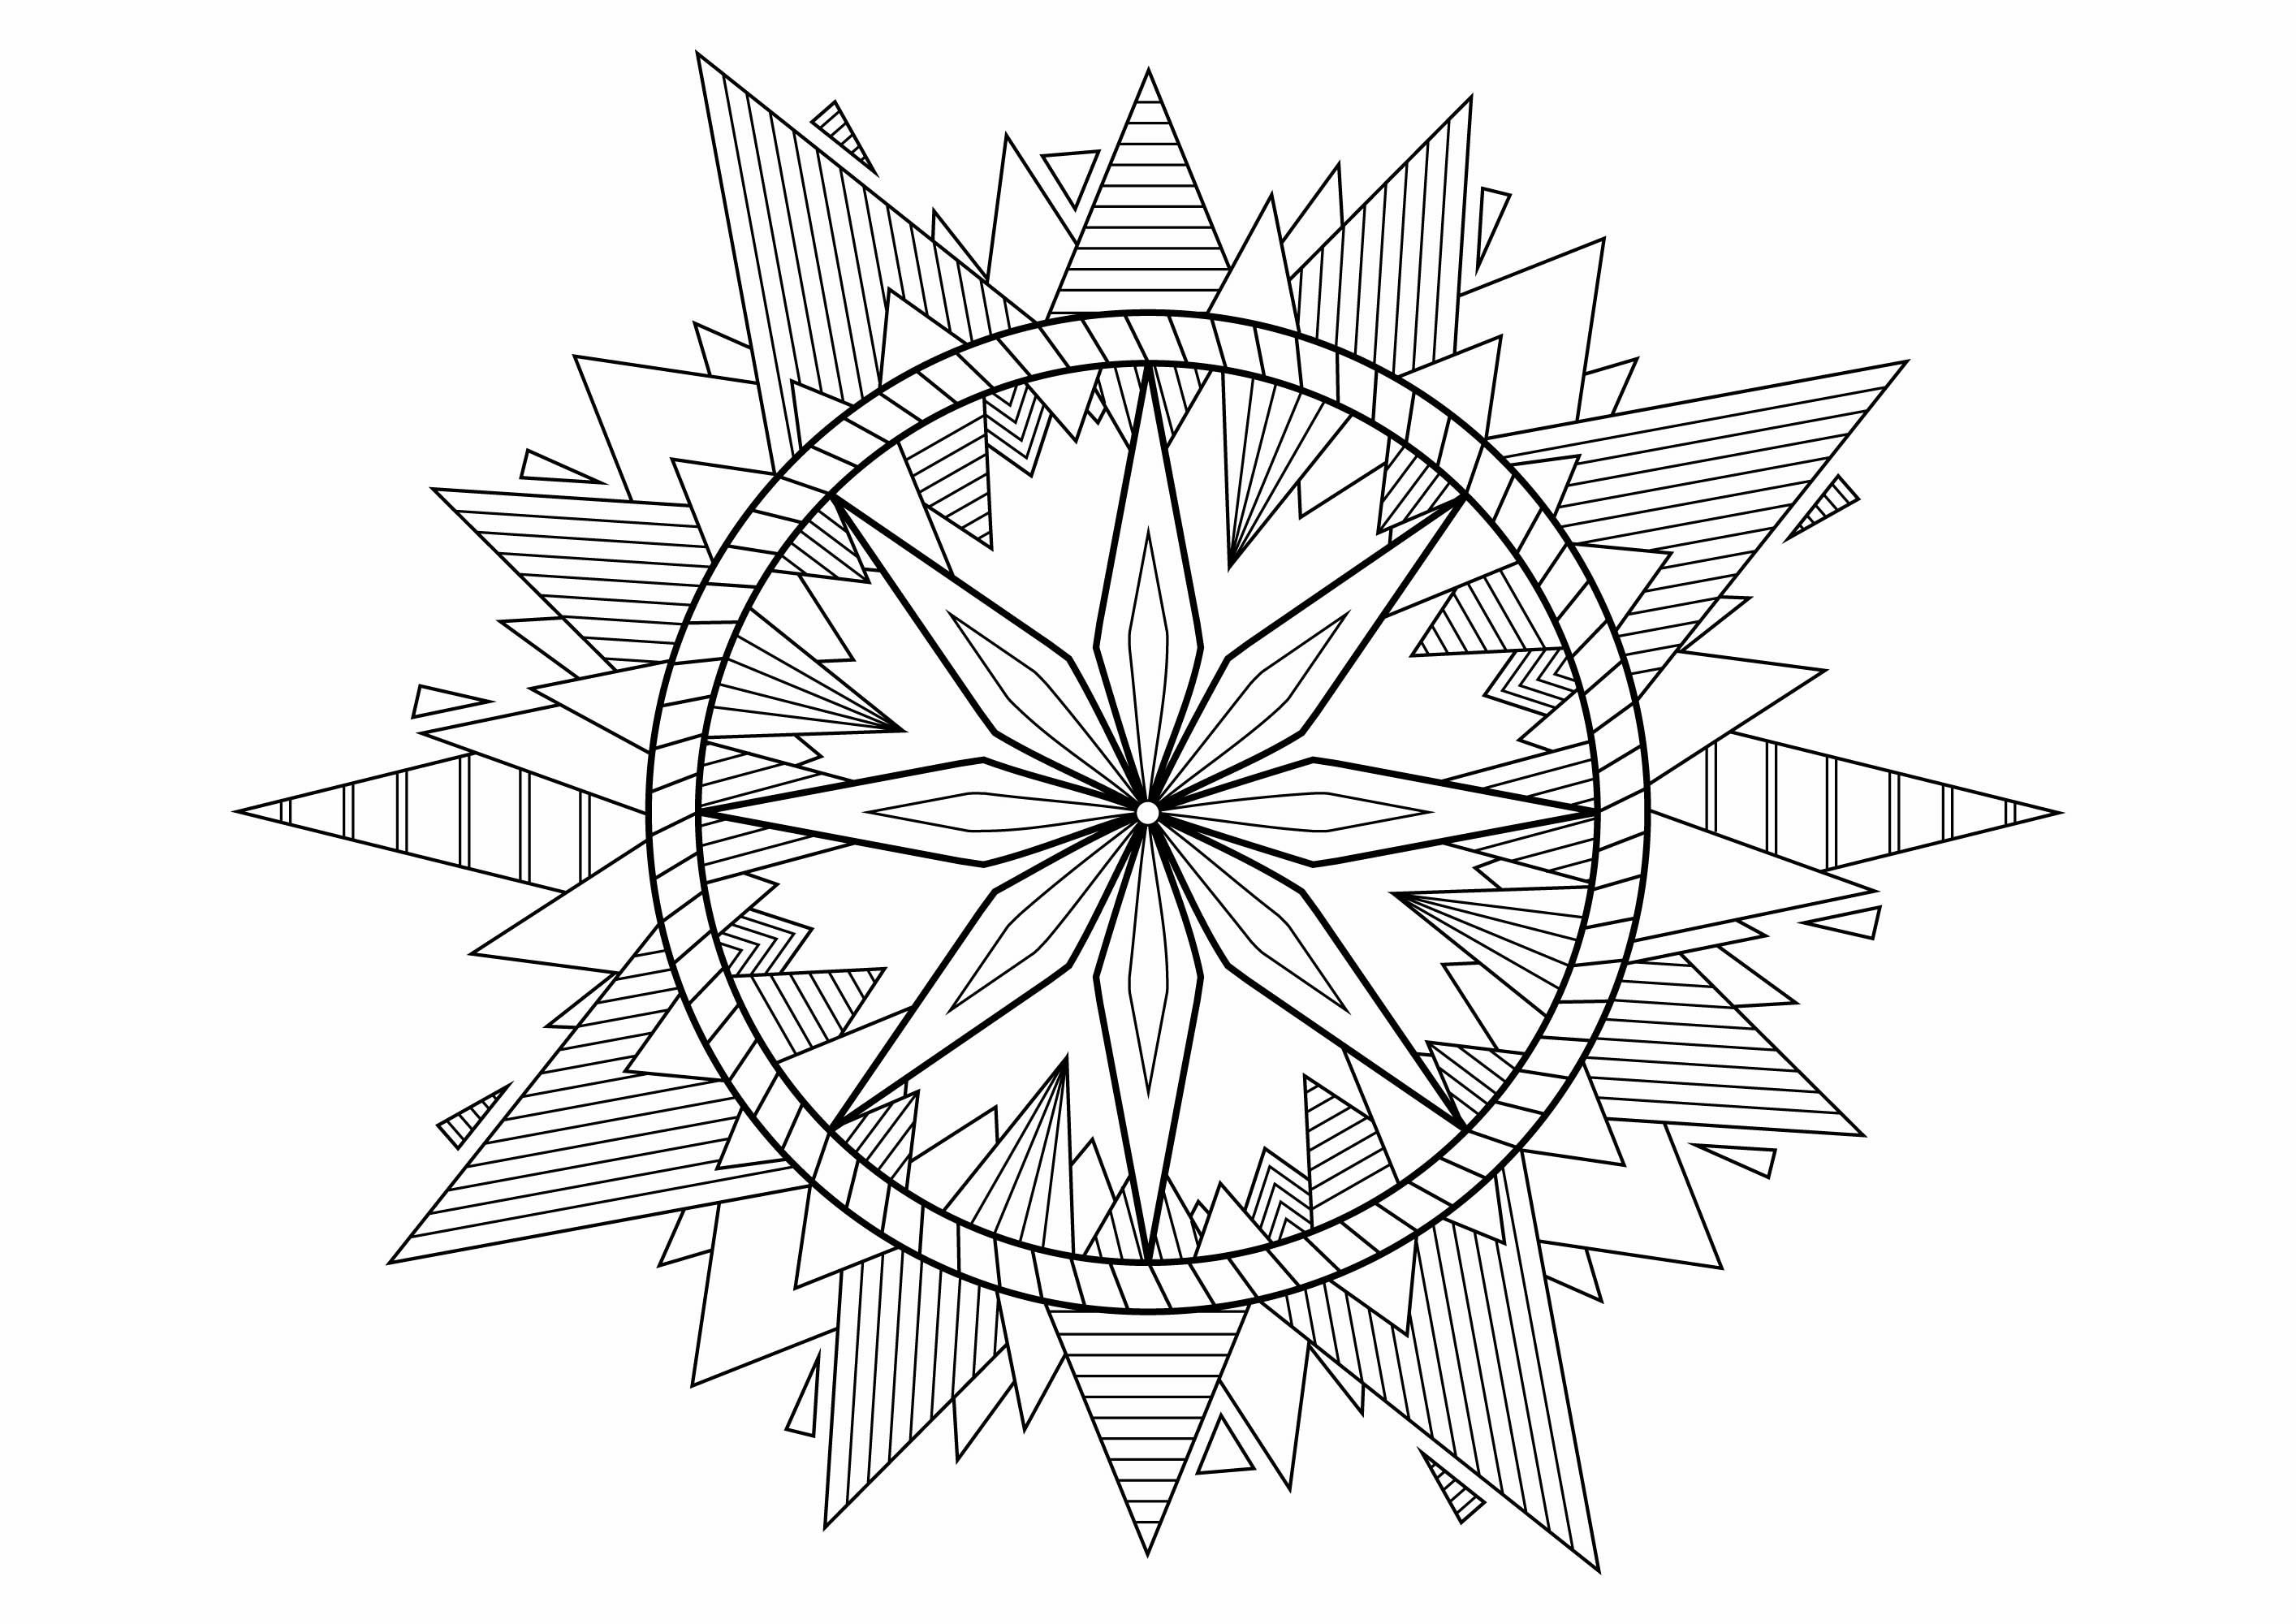 Uma bela Mandala com pirâmides nas extremidades, cheia de bonitos padrões para colorir, Artista : Davy